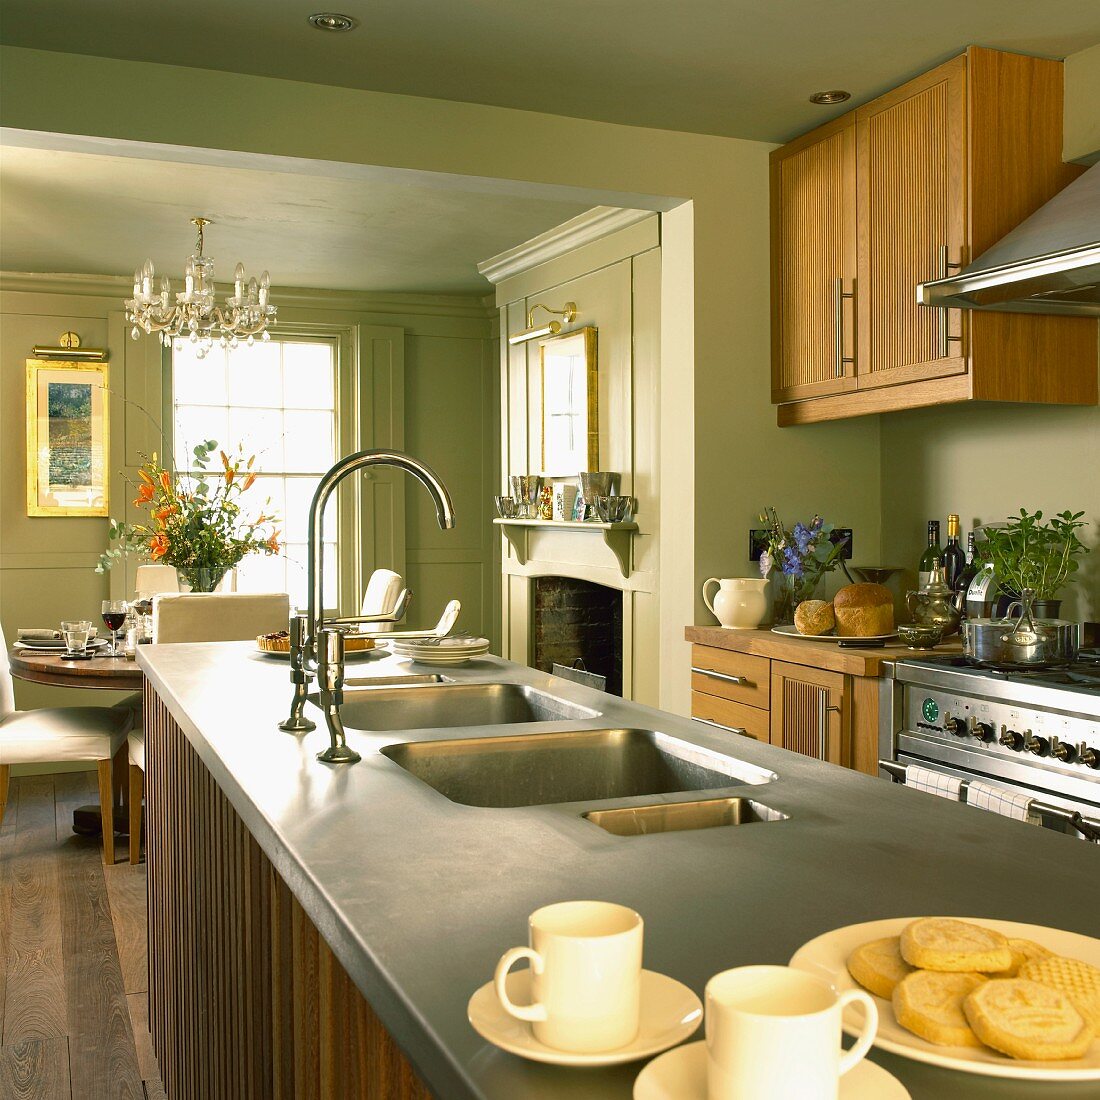 Küche im Landhausstil mit pastellgrünen Wänden, Holzmöbeln, offenem Kamin und Essplatz